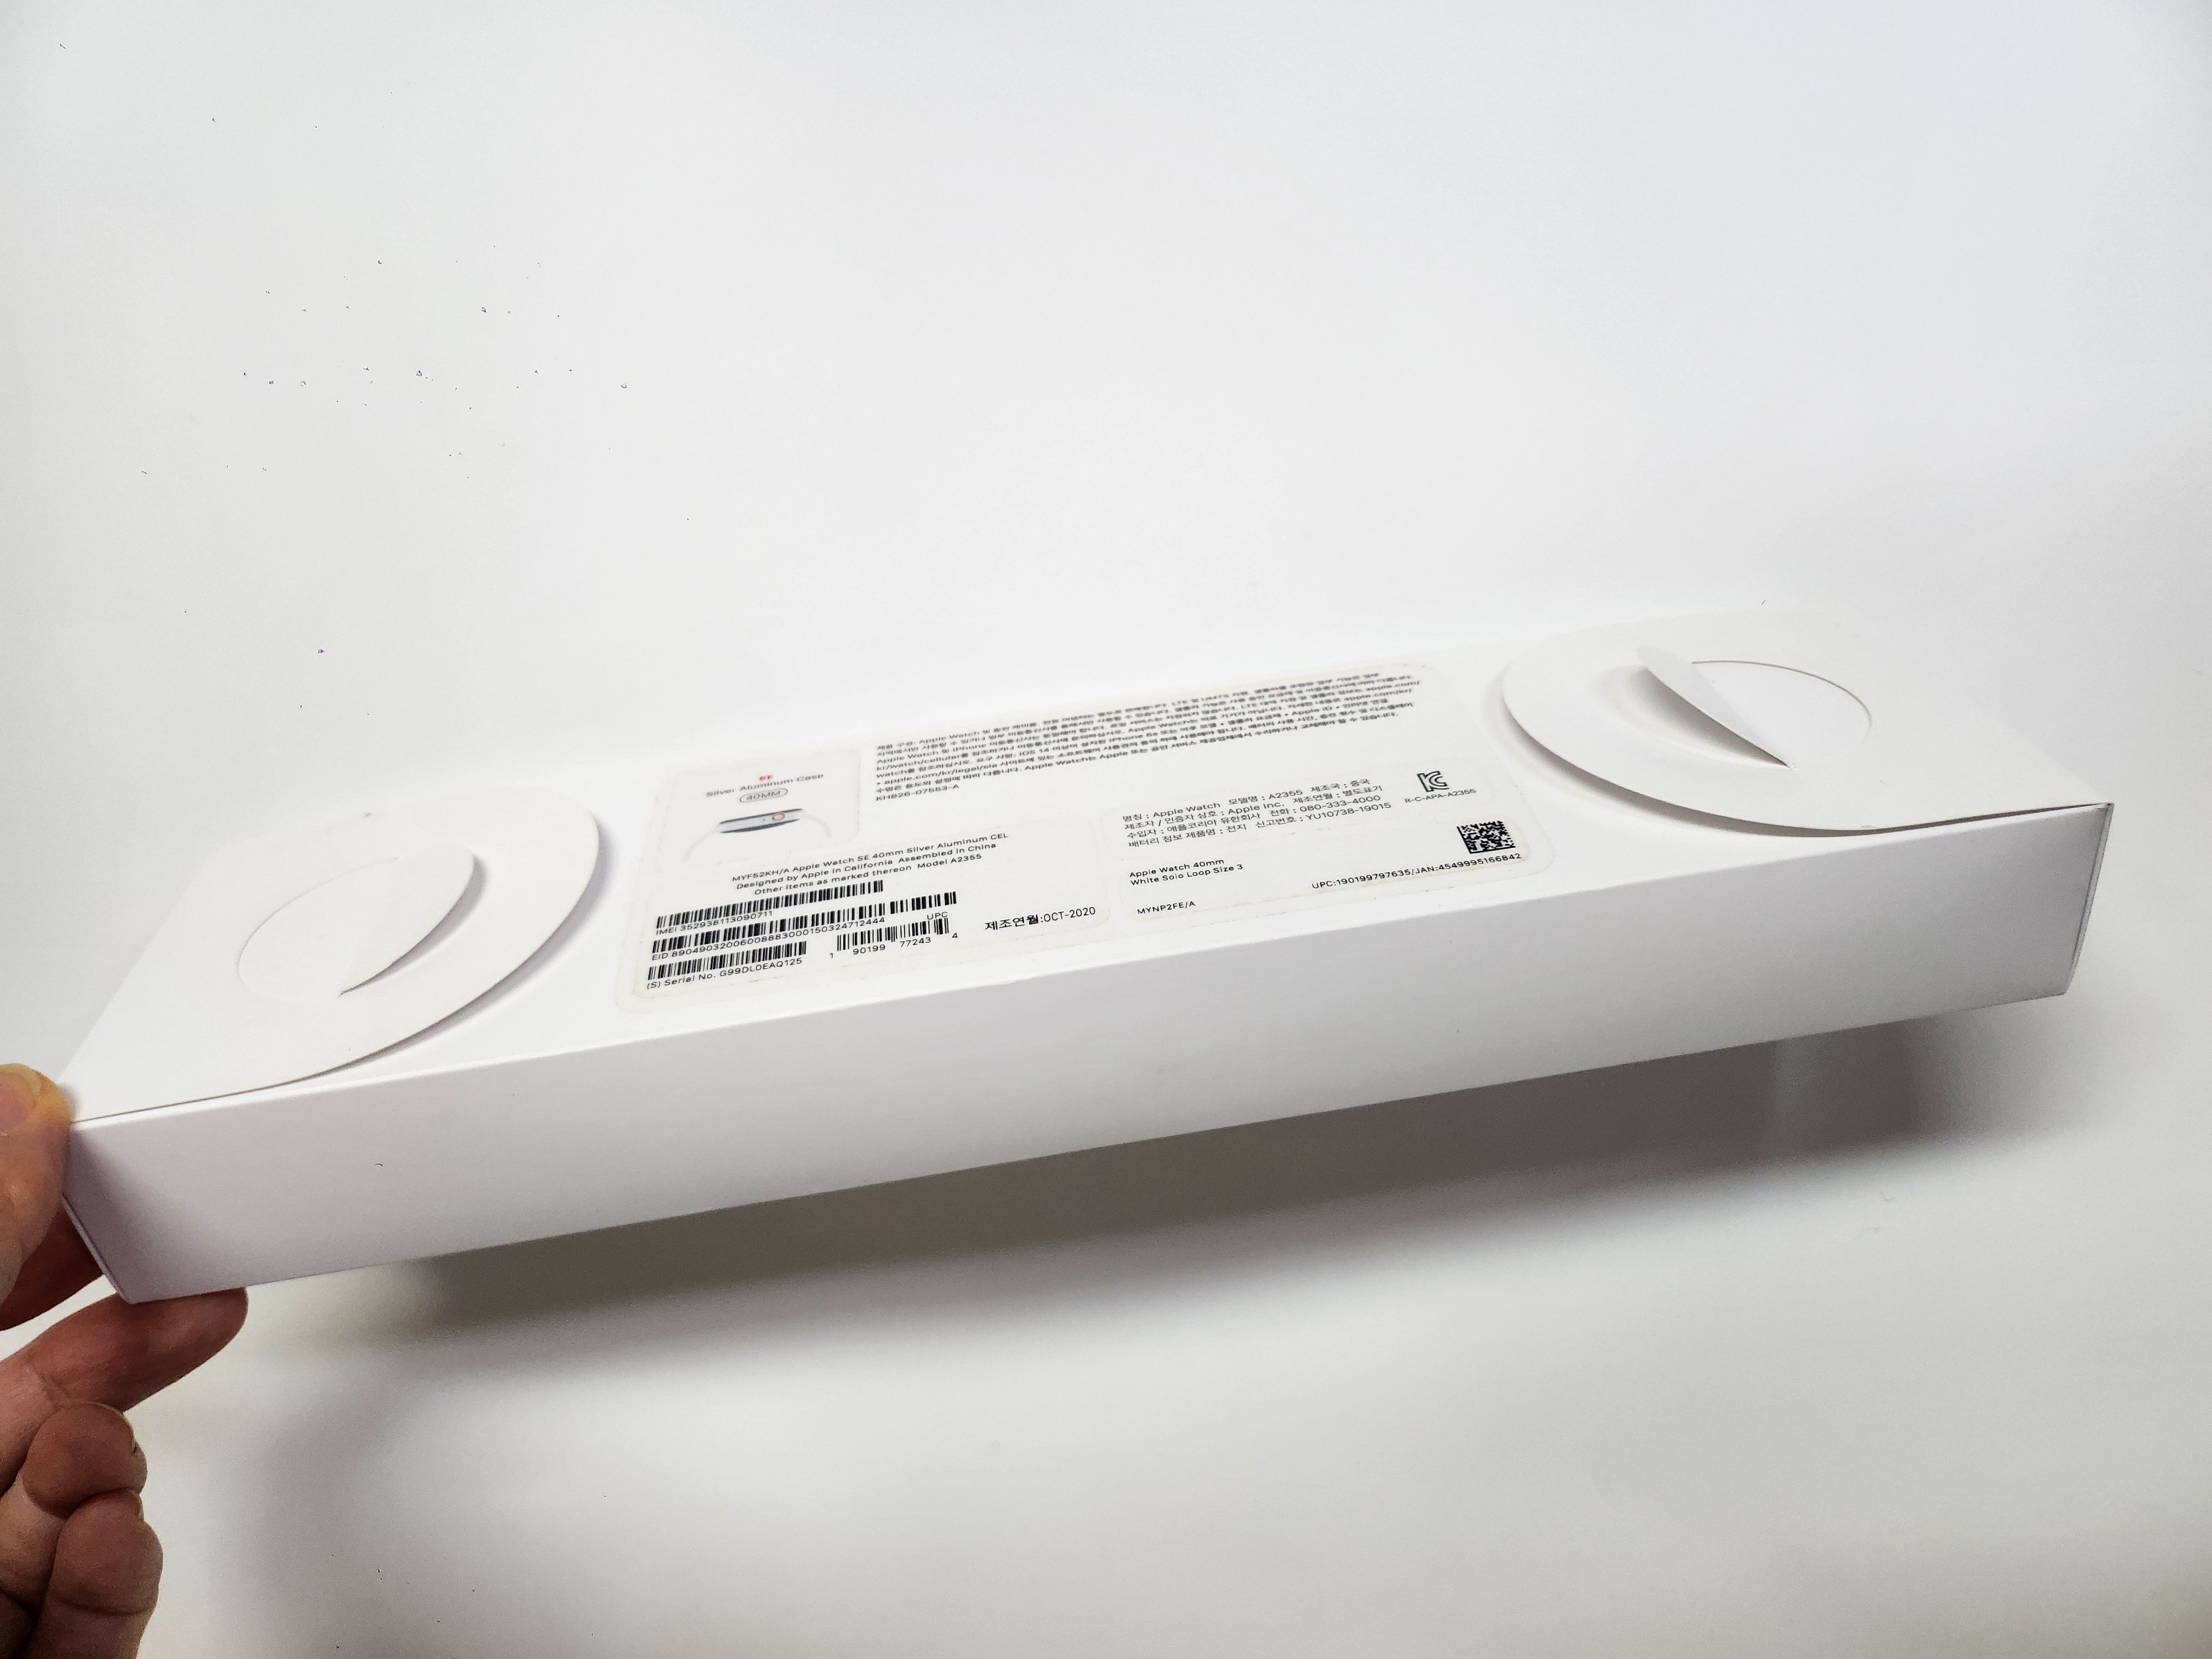 애플워치SE1 40mm 셀룰러 최상급 배터리효율94%